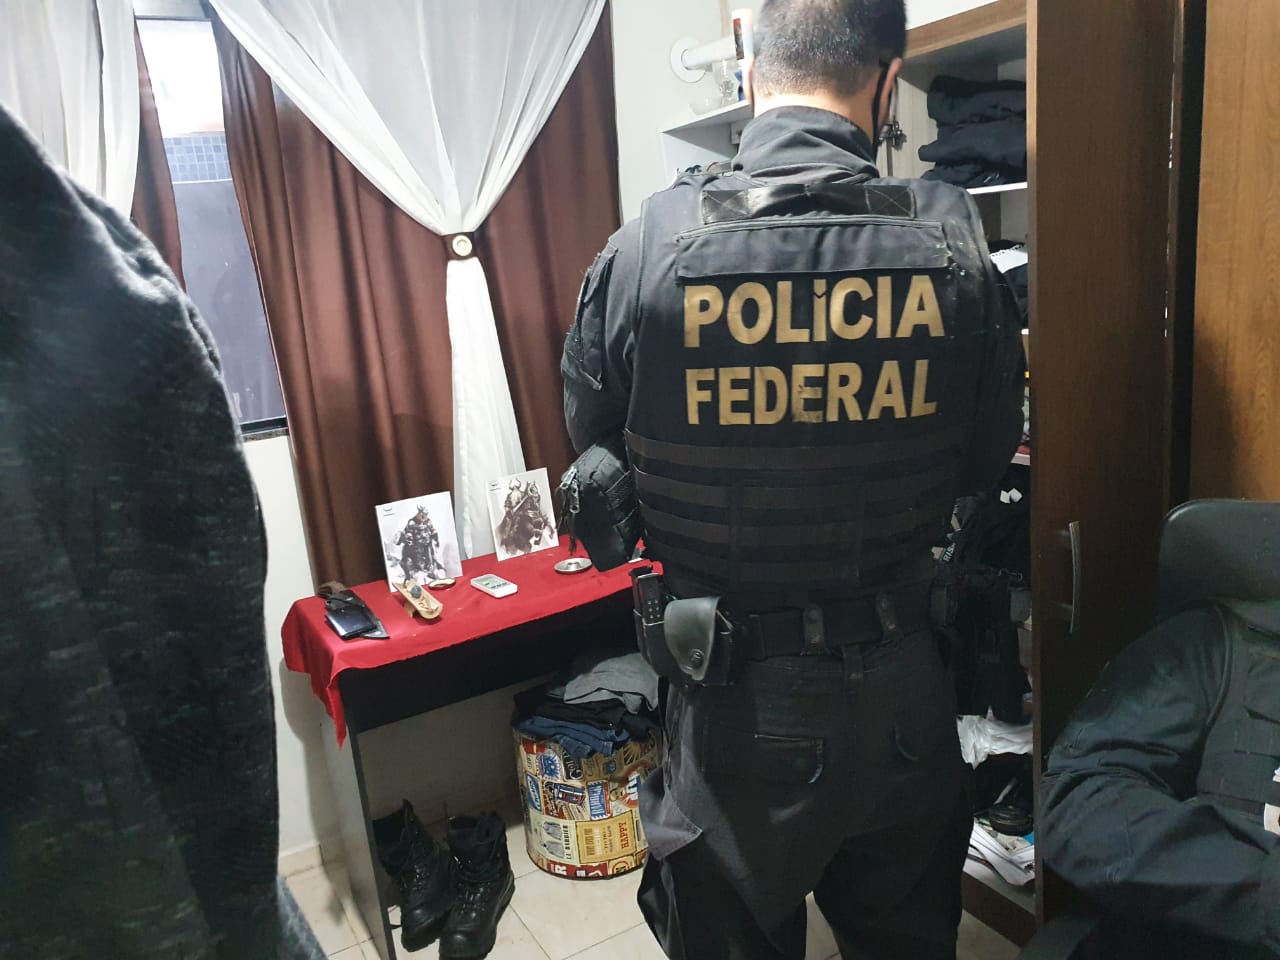  Neonazista suspeito de incitar crimes de ódio é alvo de operação da PF, em Paranaguá